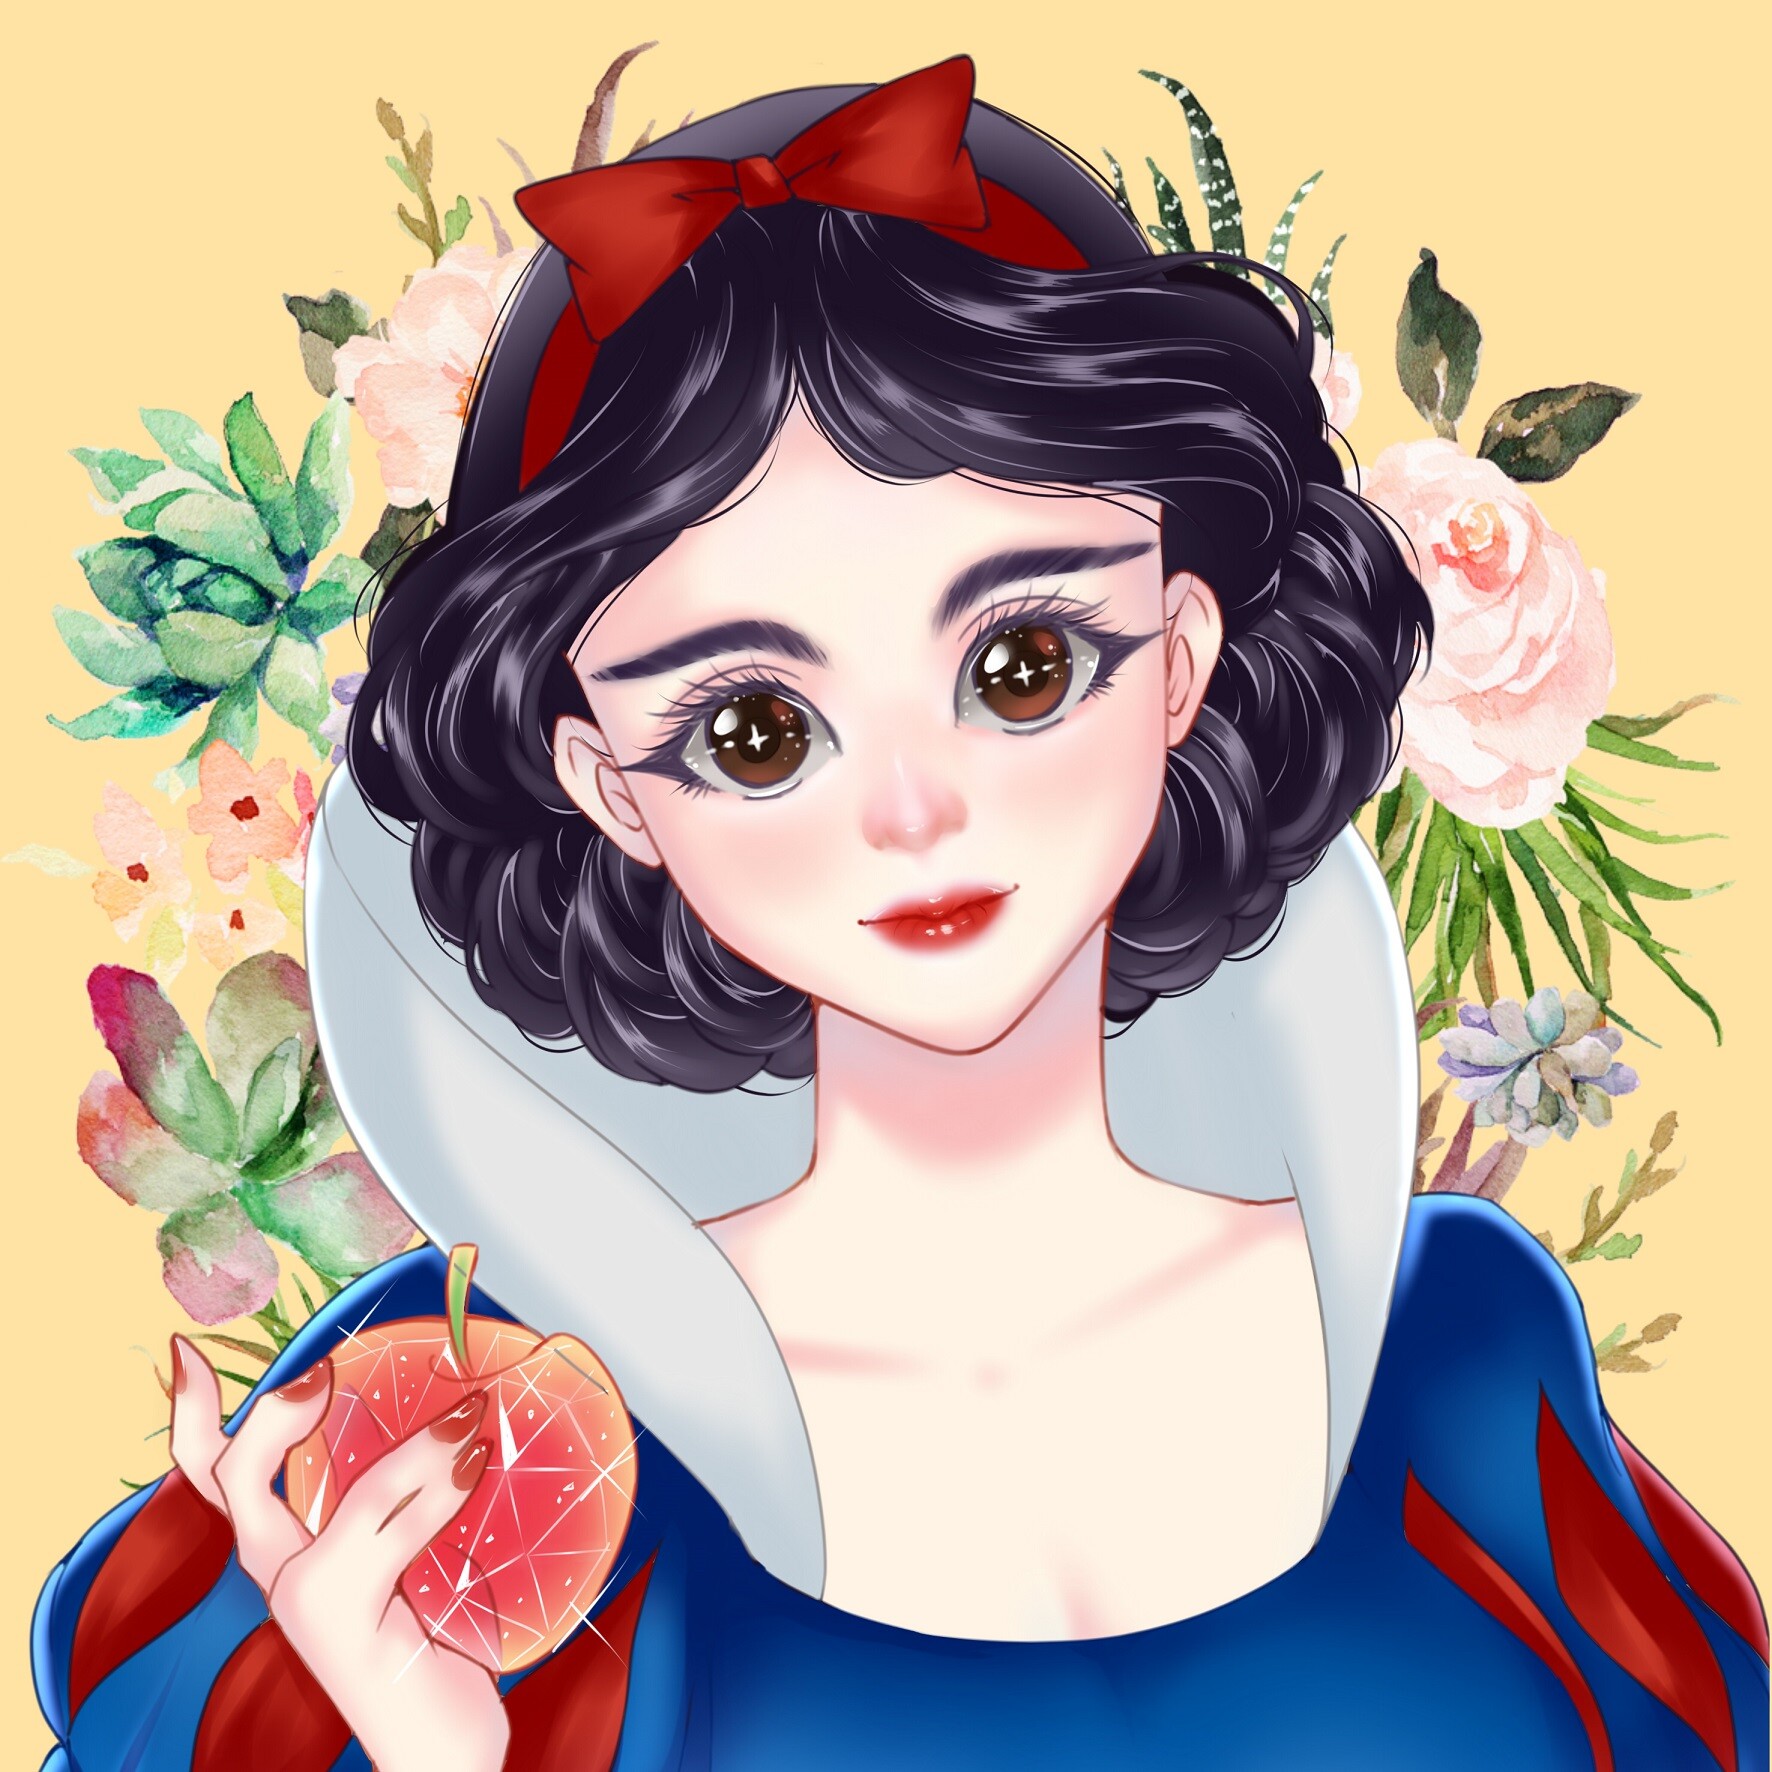 ArtStation - Snow White